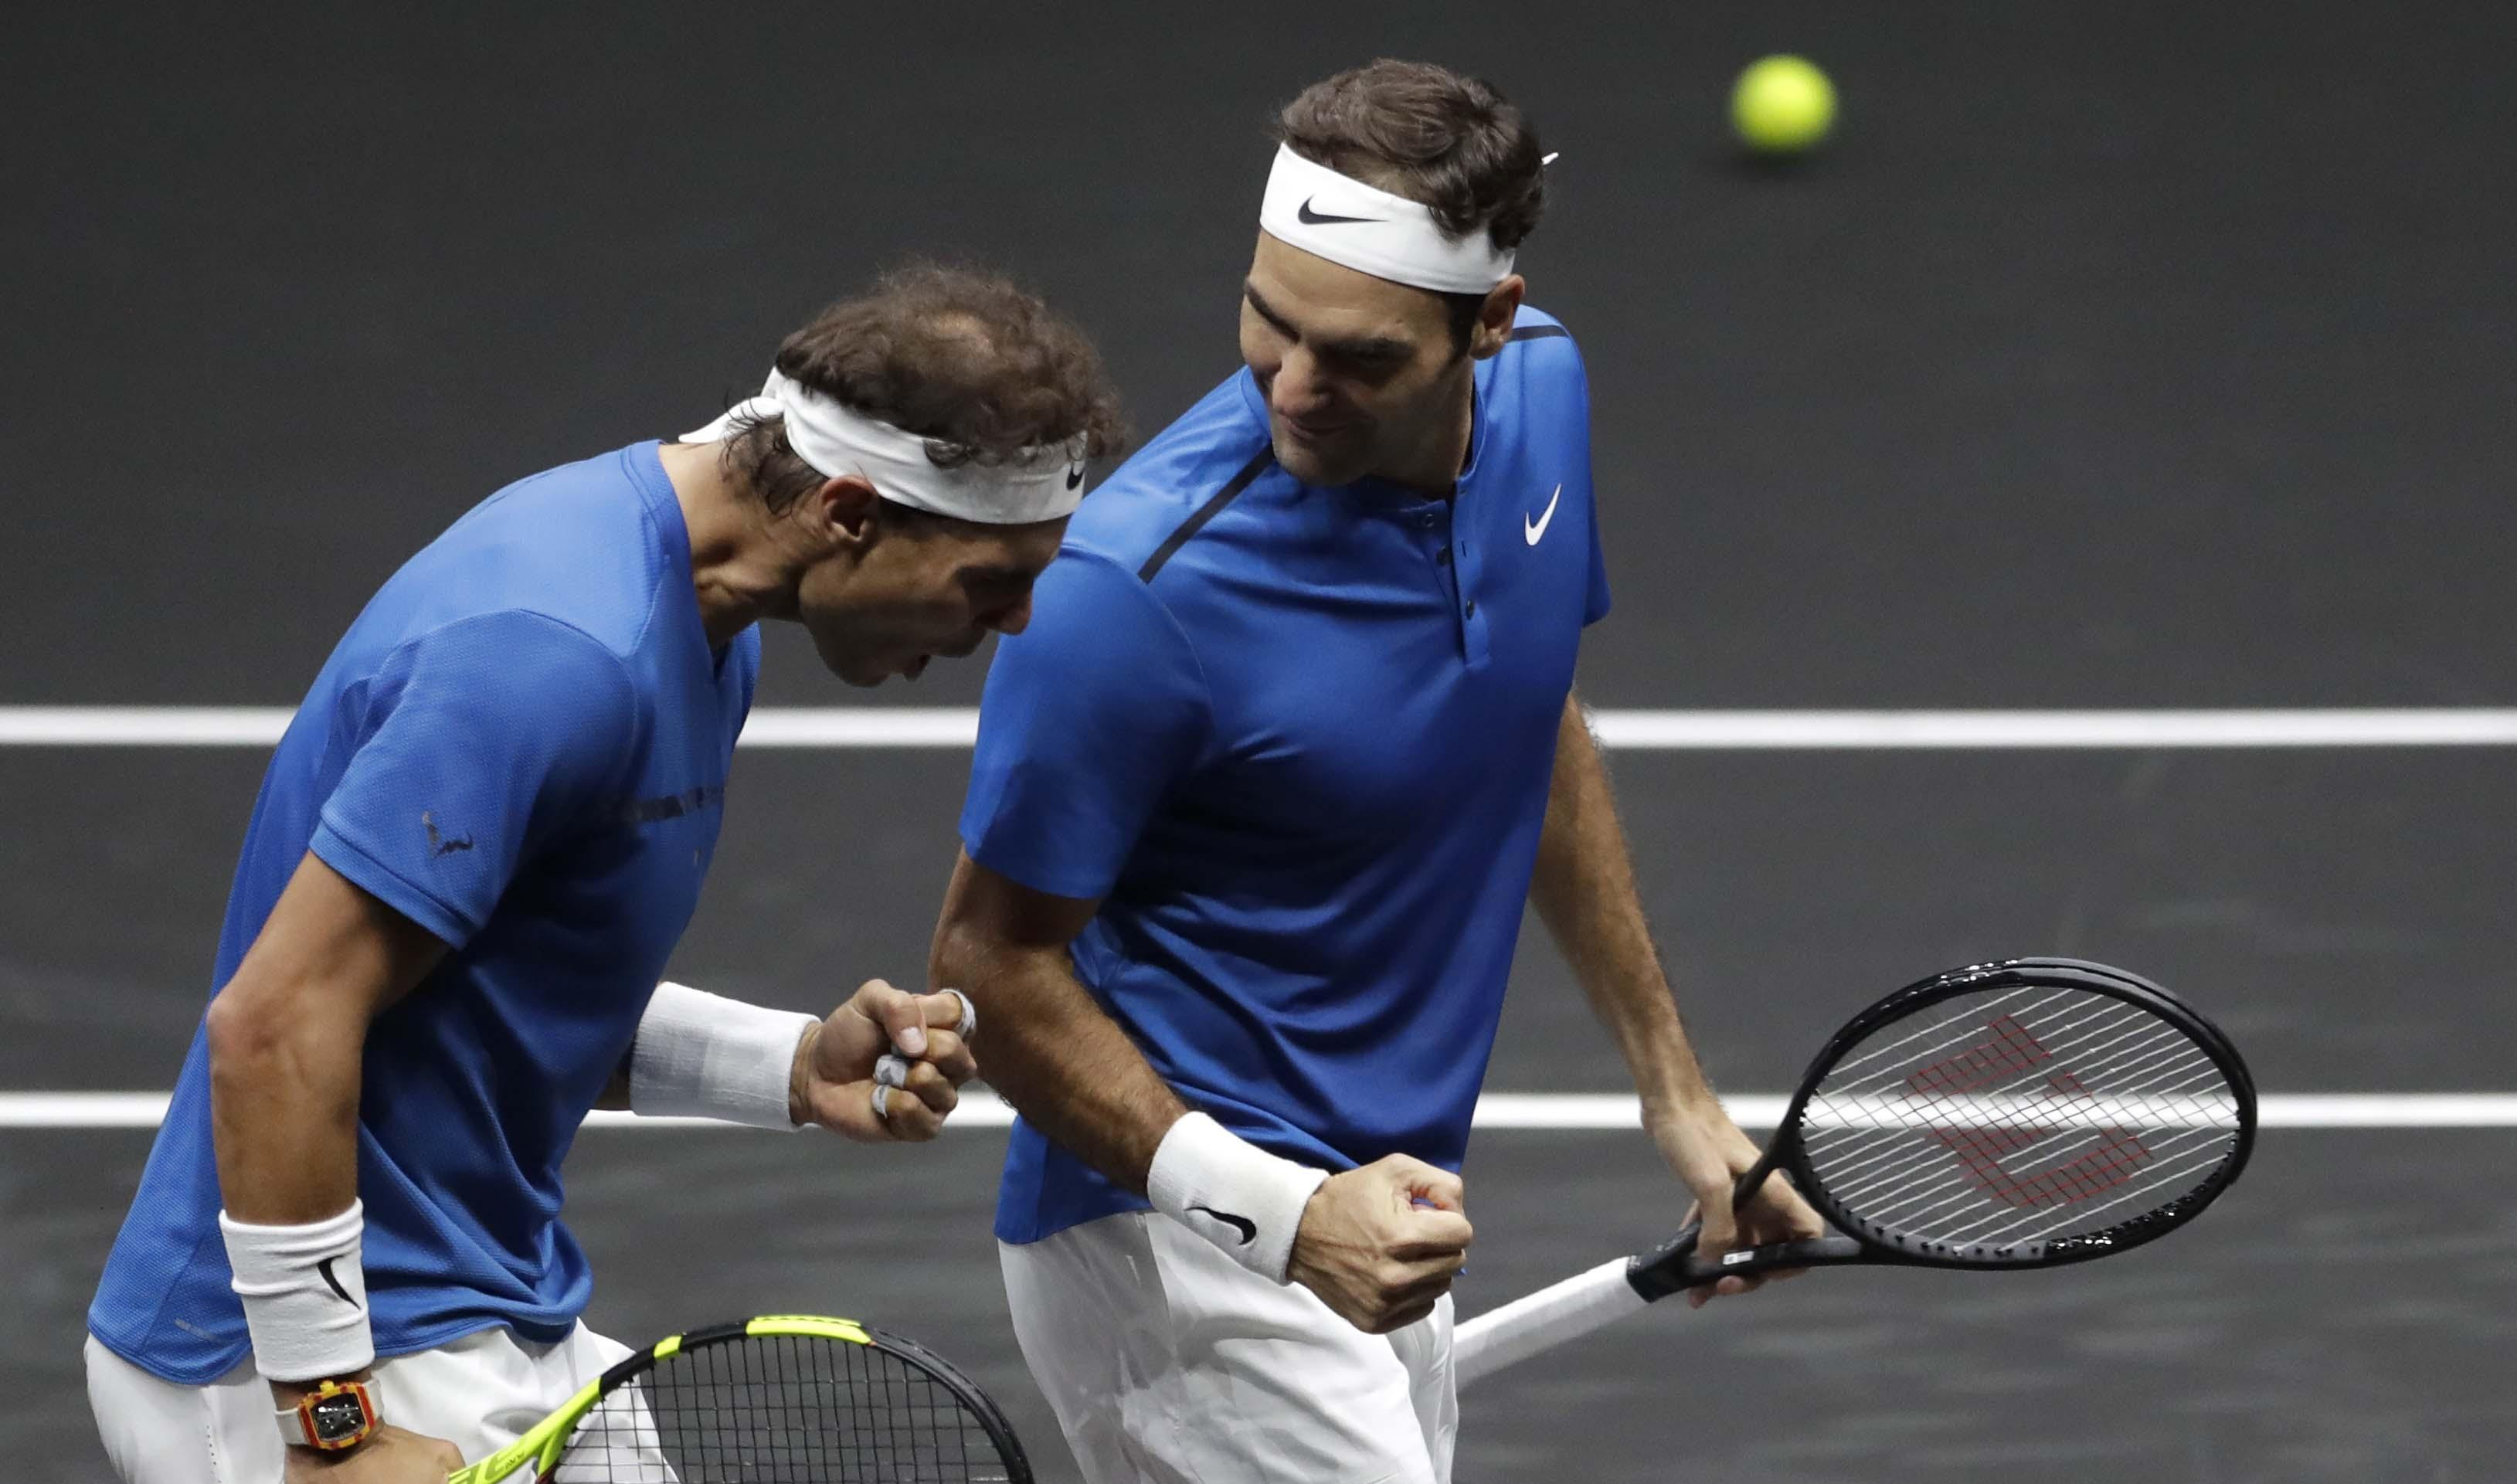 NI SA RAFOM SE NIJE VOLEO! Federer otkrio: Imao sam ranije nesporazume sa Nadalom...